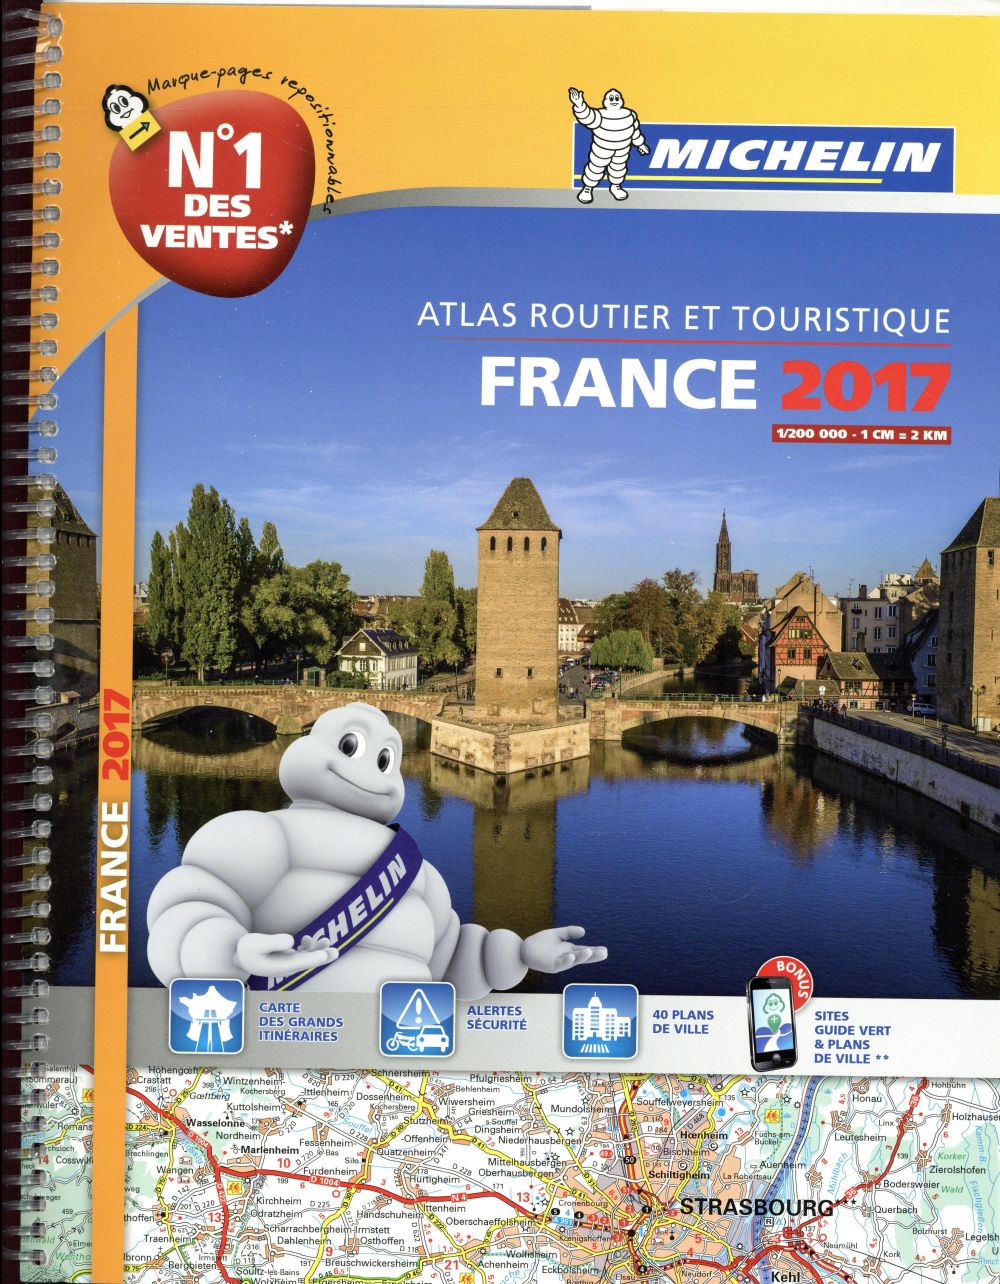 Atlas routier et touristique France (édition 2017)